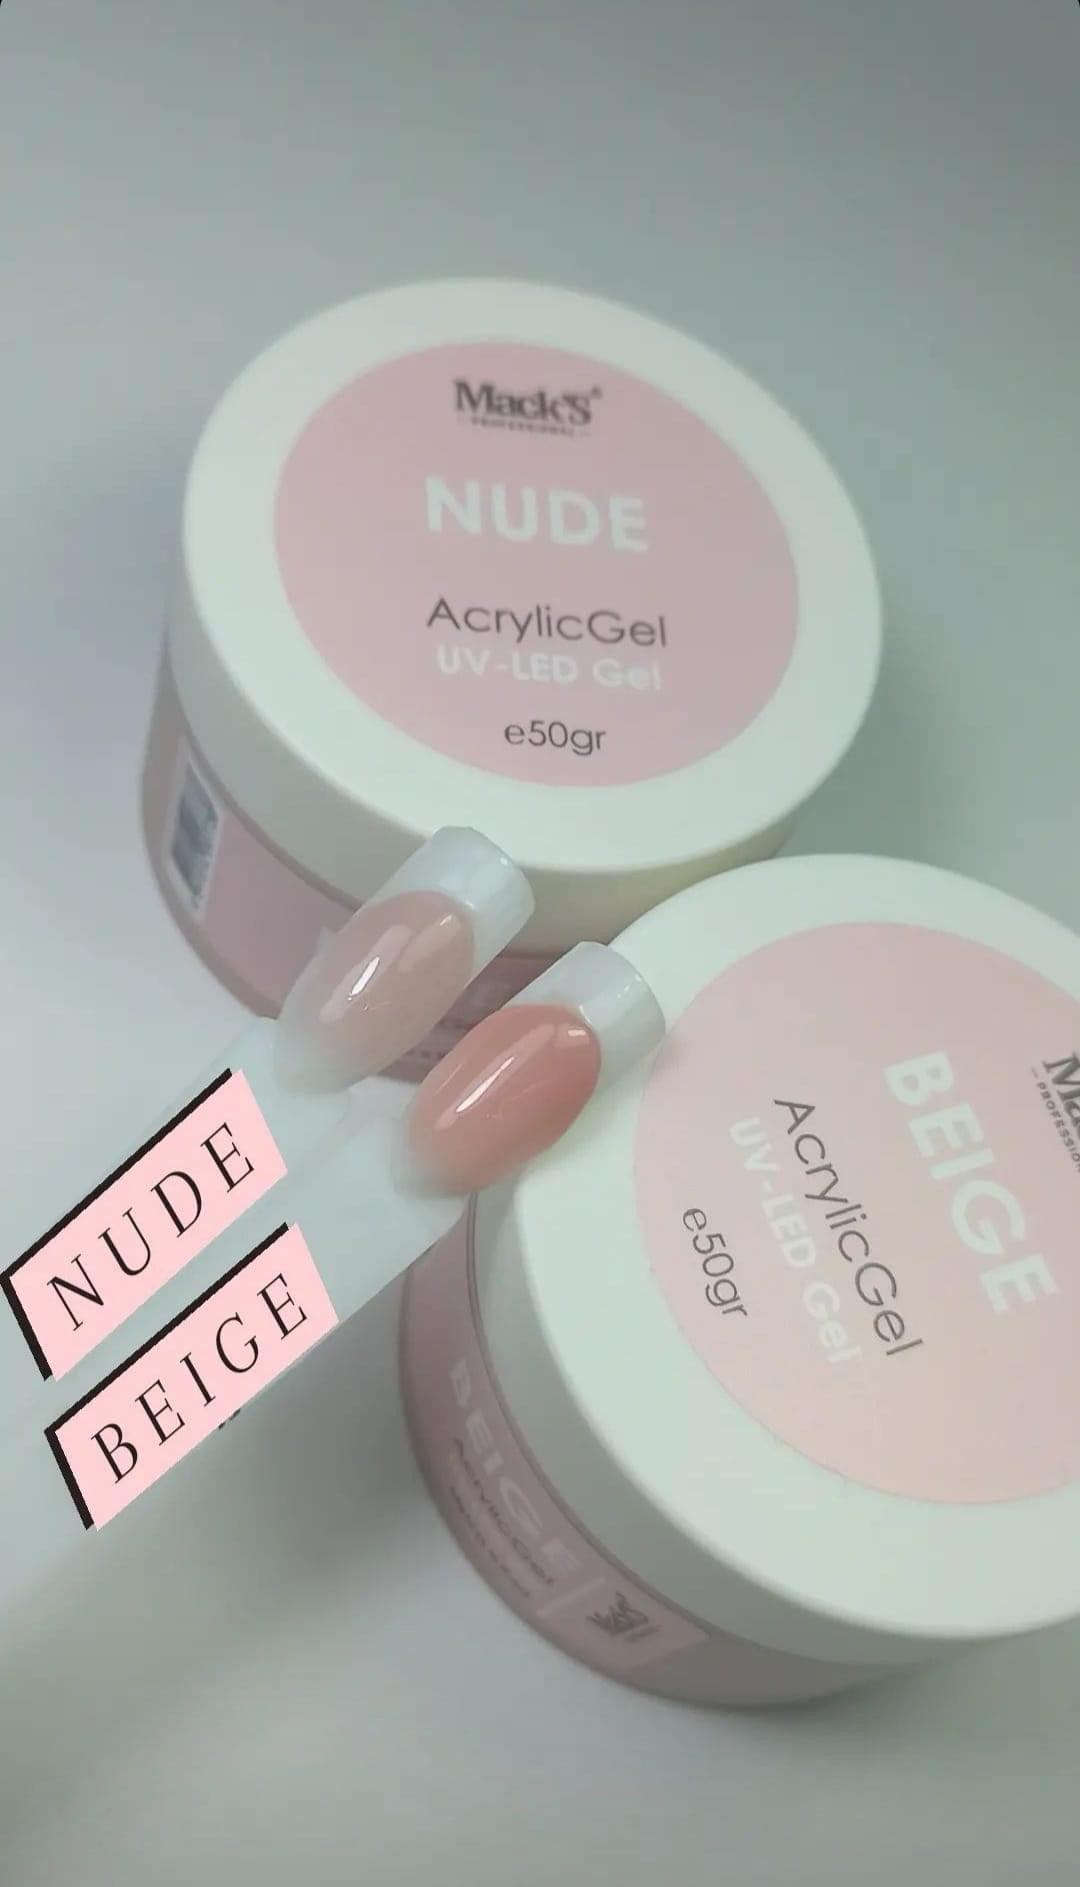 Mack’s AcrylicGel - Nude